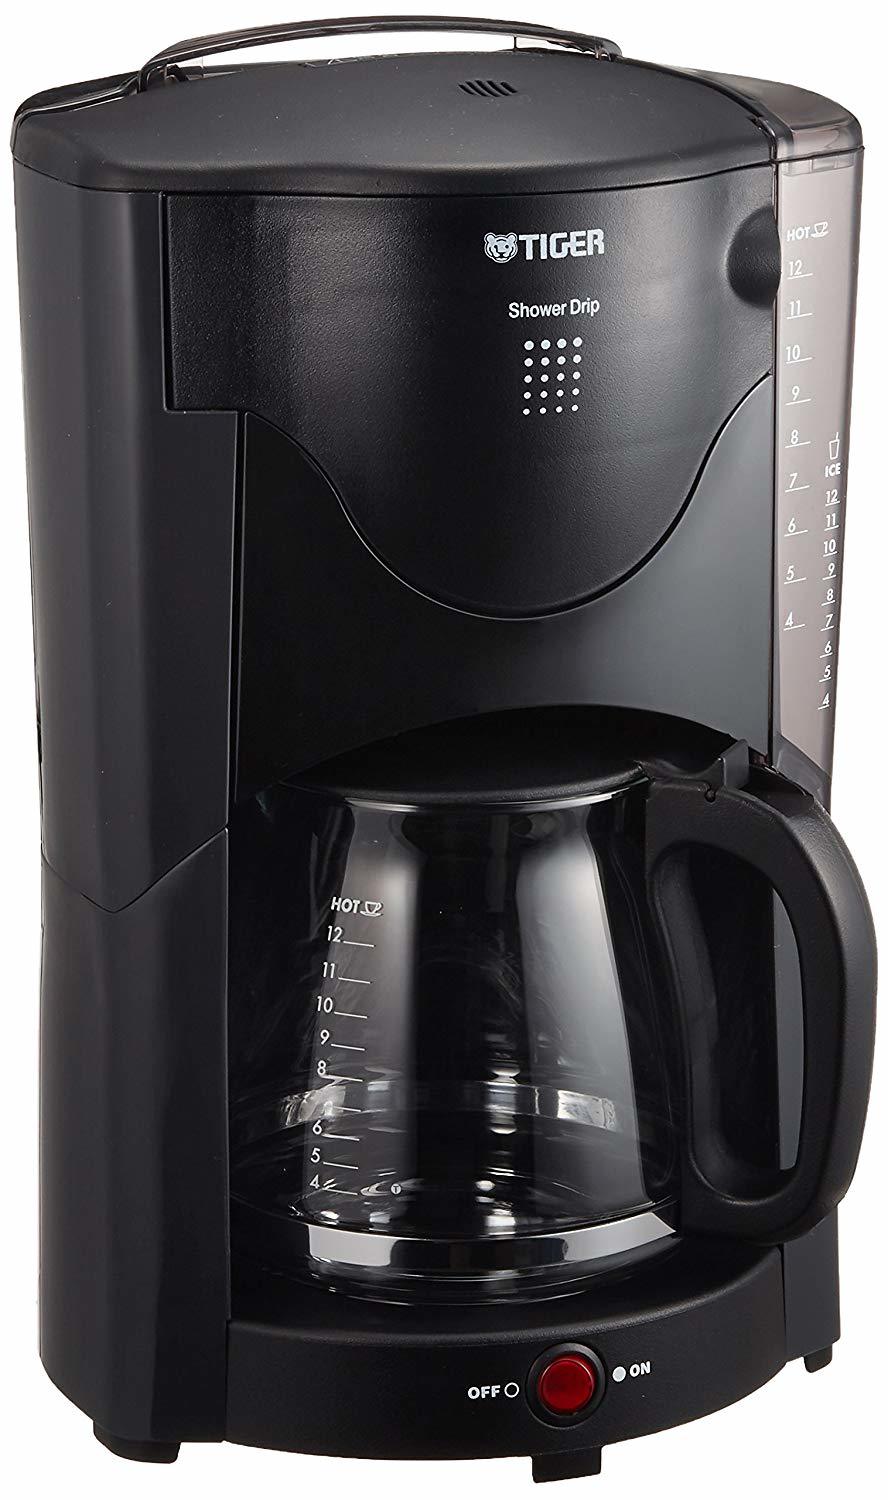 タイガー コーヒーメーカー 12杯用 シャワードリップ方式 アーバングレー ACJ-B120-HU Tiger ネットショップMR